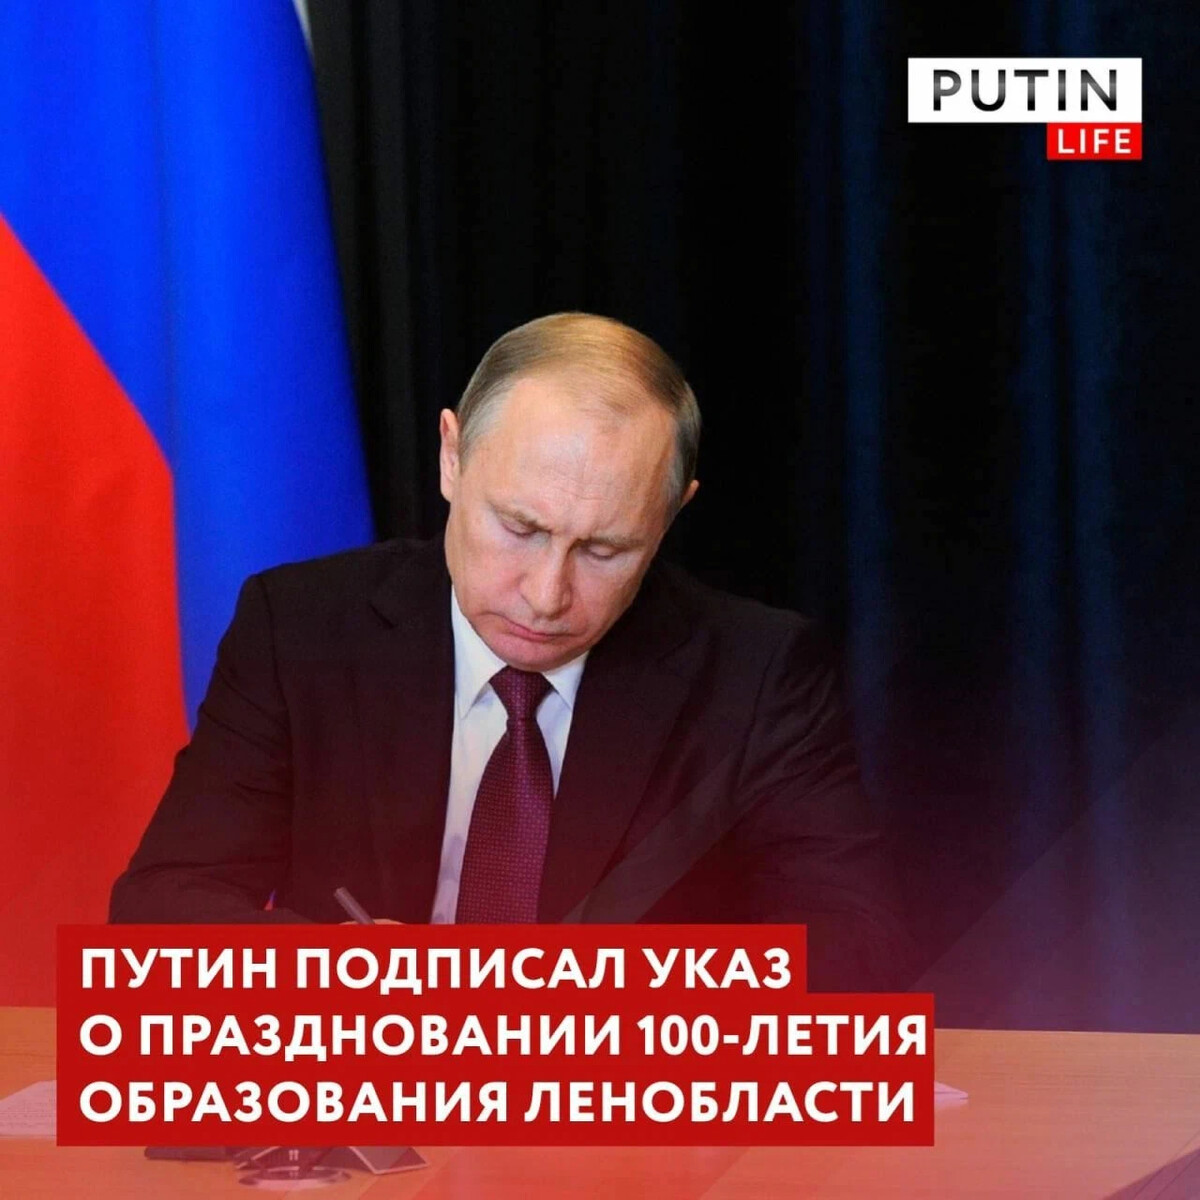 Путин подписал указ о праздновании 100-летия Ханты-Мансийского